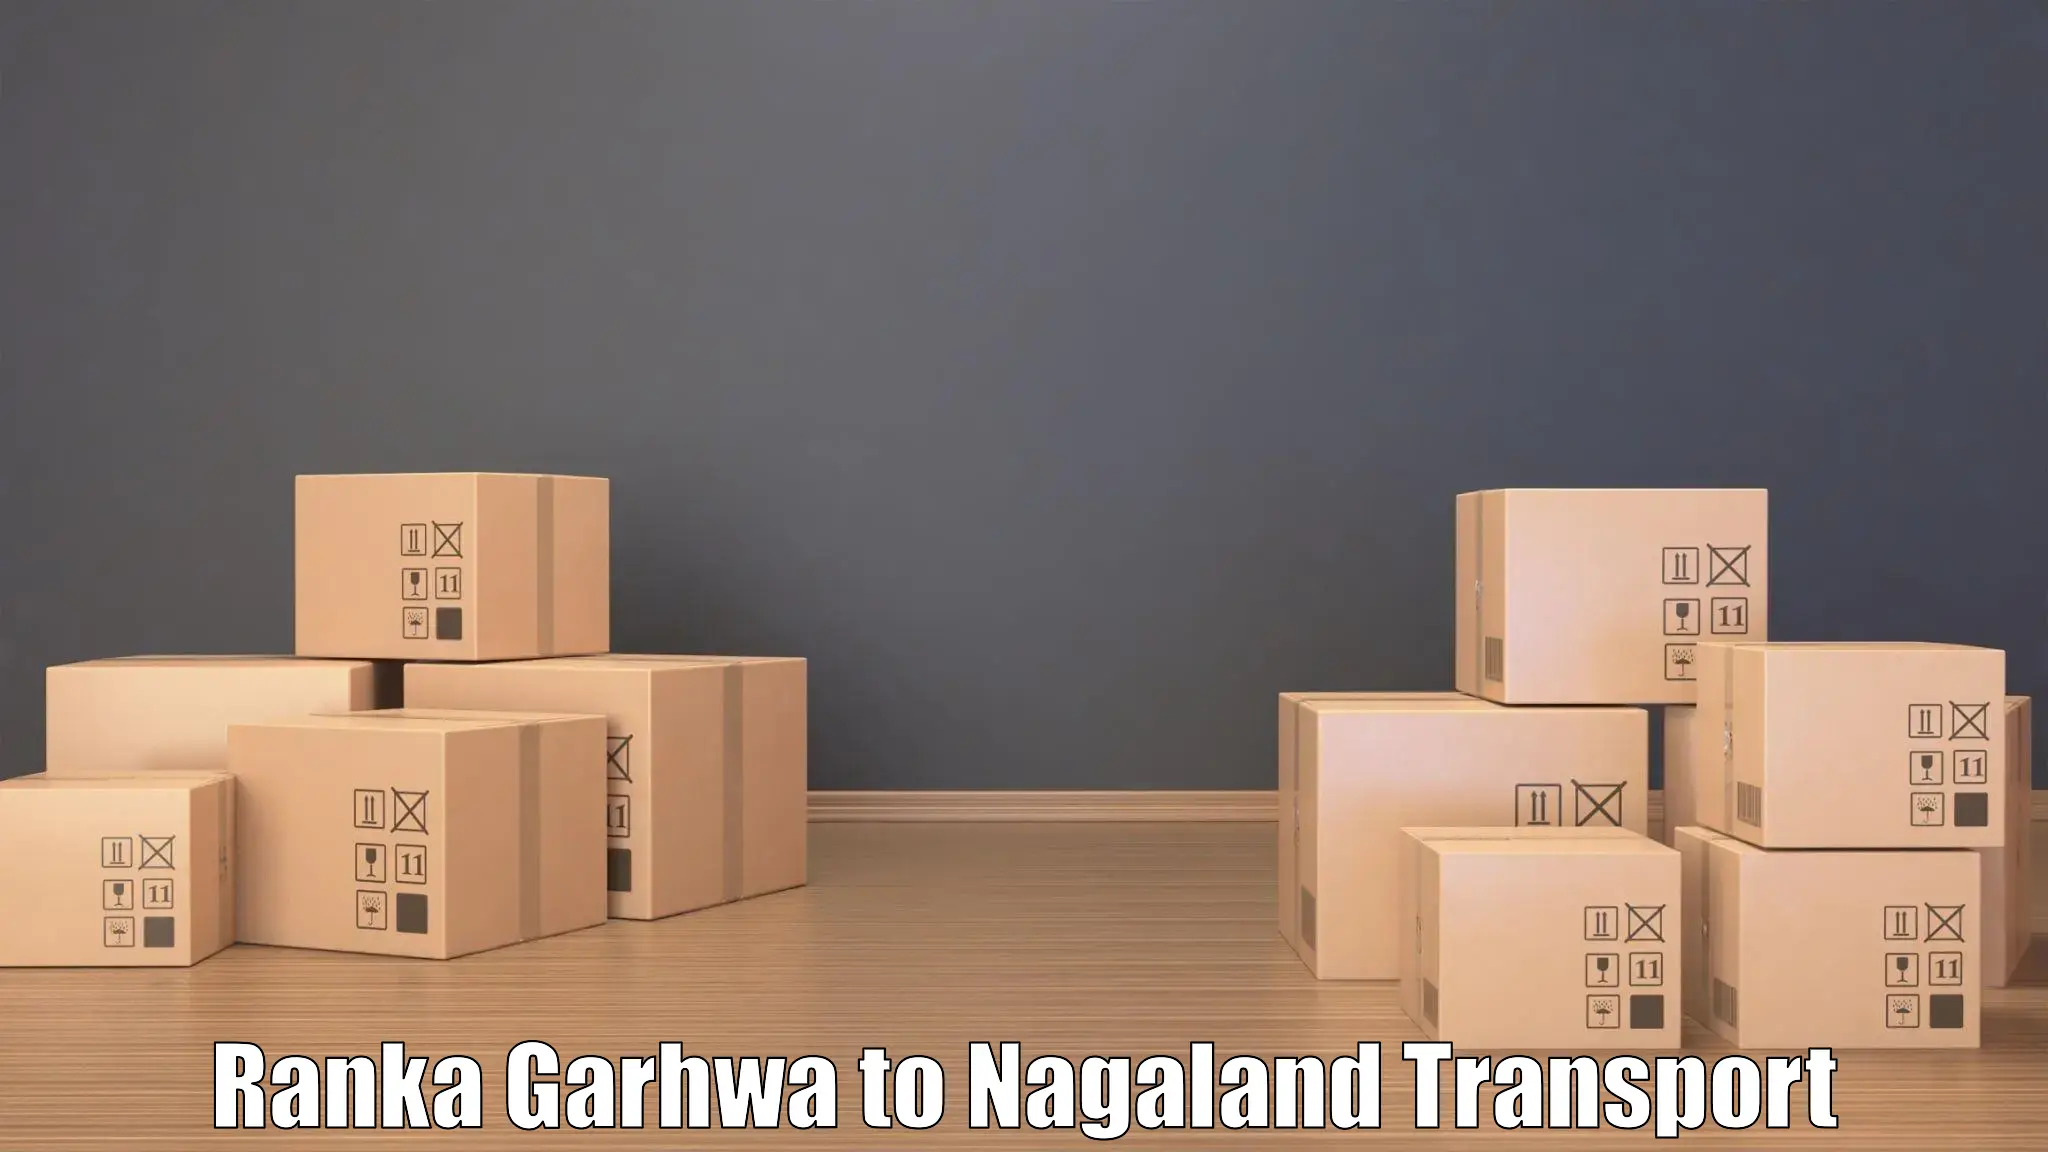 Express transport services Ranka Garhwa to Longleng